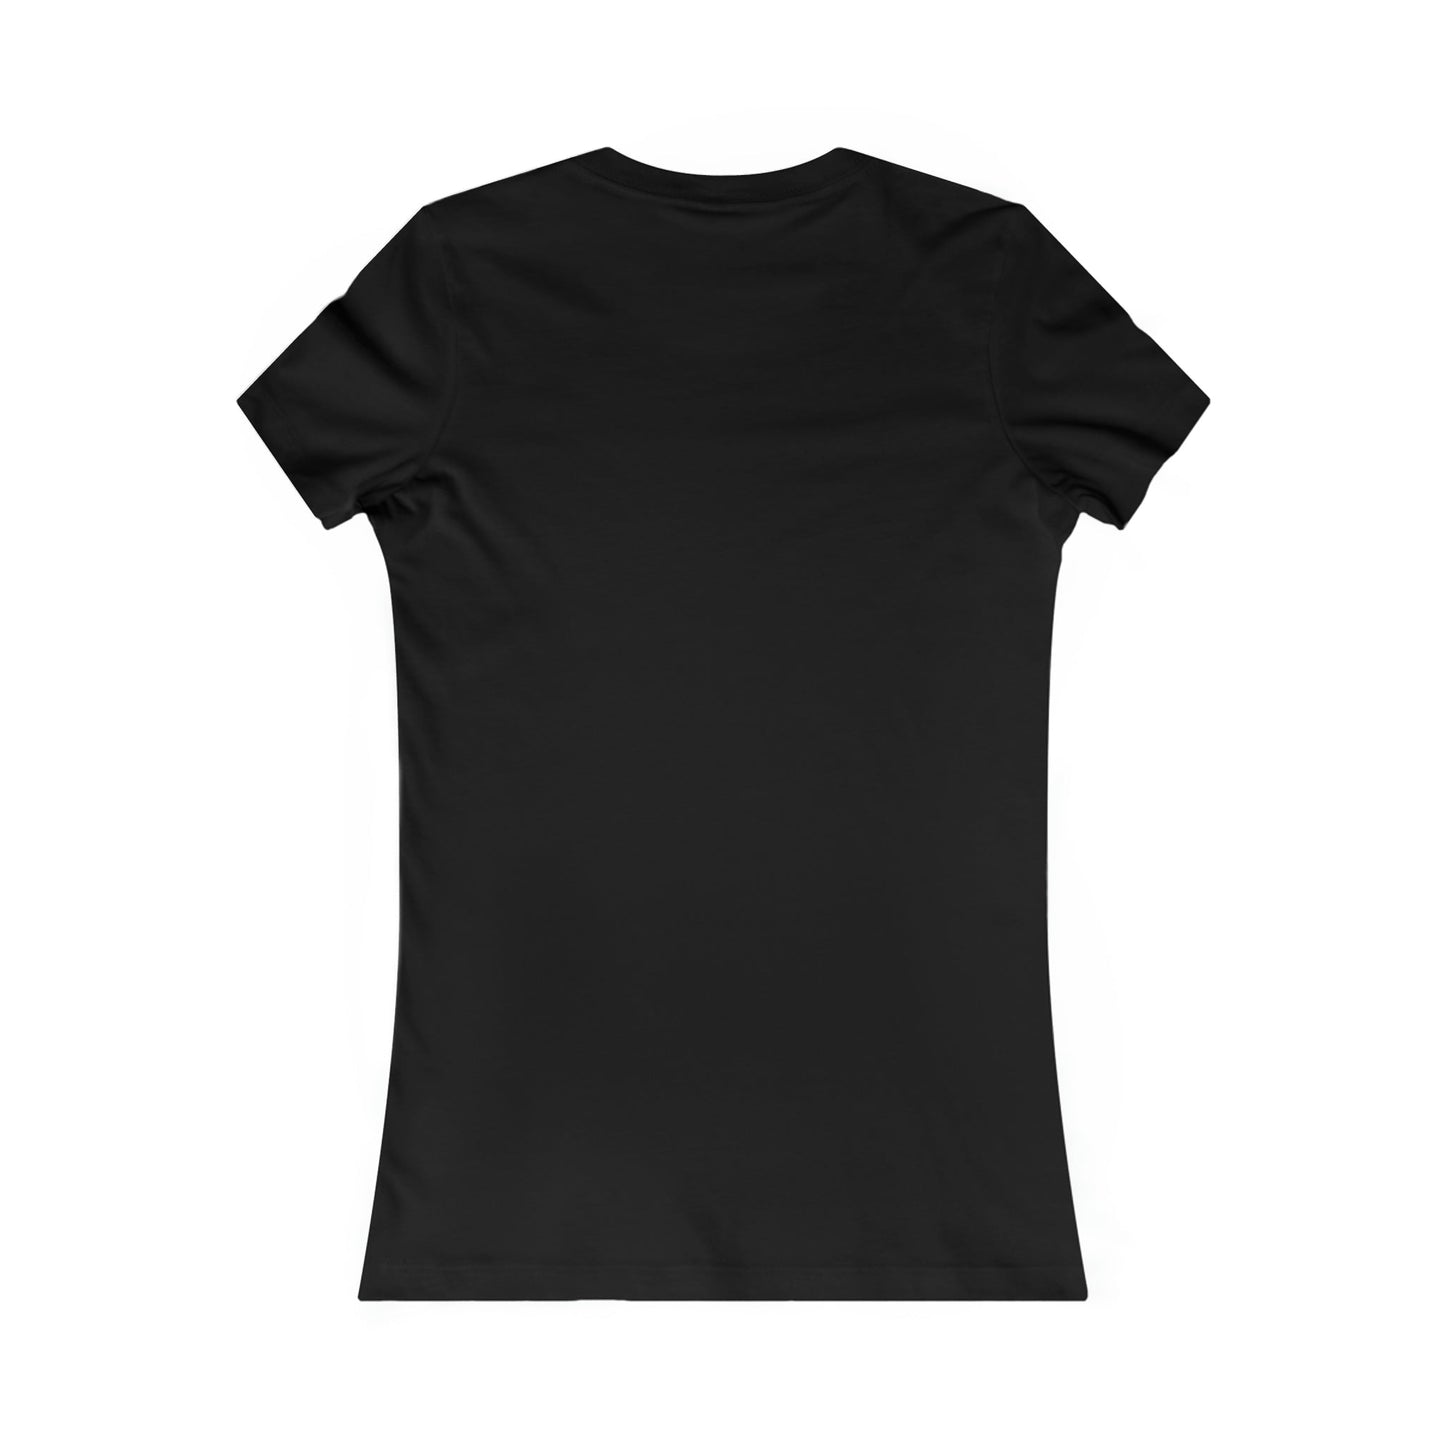 Printify T-Shirt Design V4  V.K.N.G™  Girly Cut